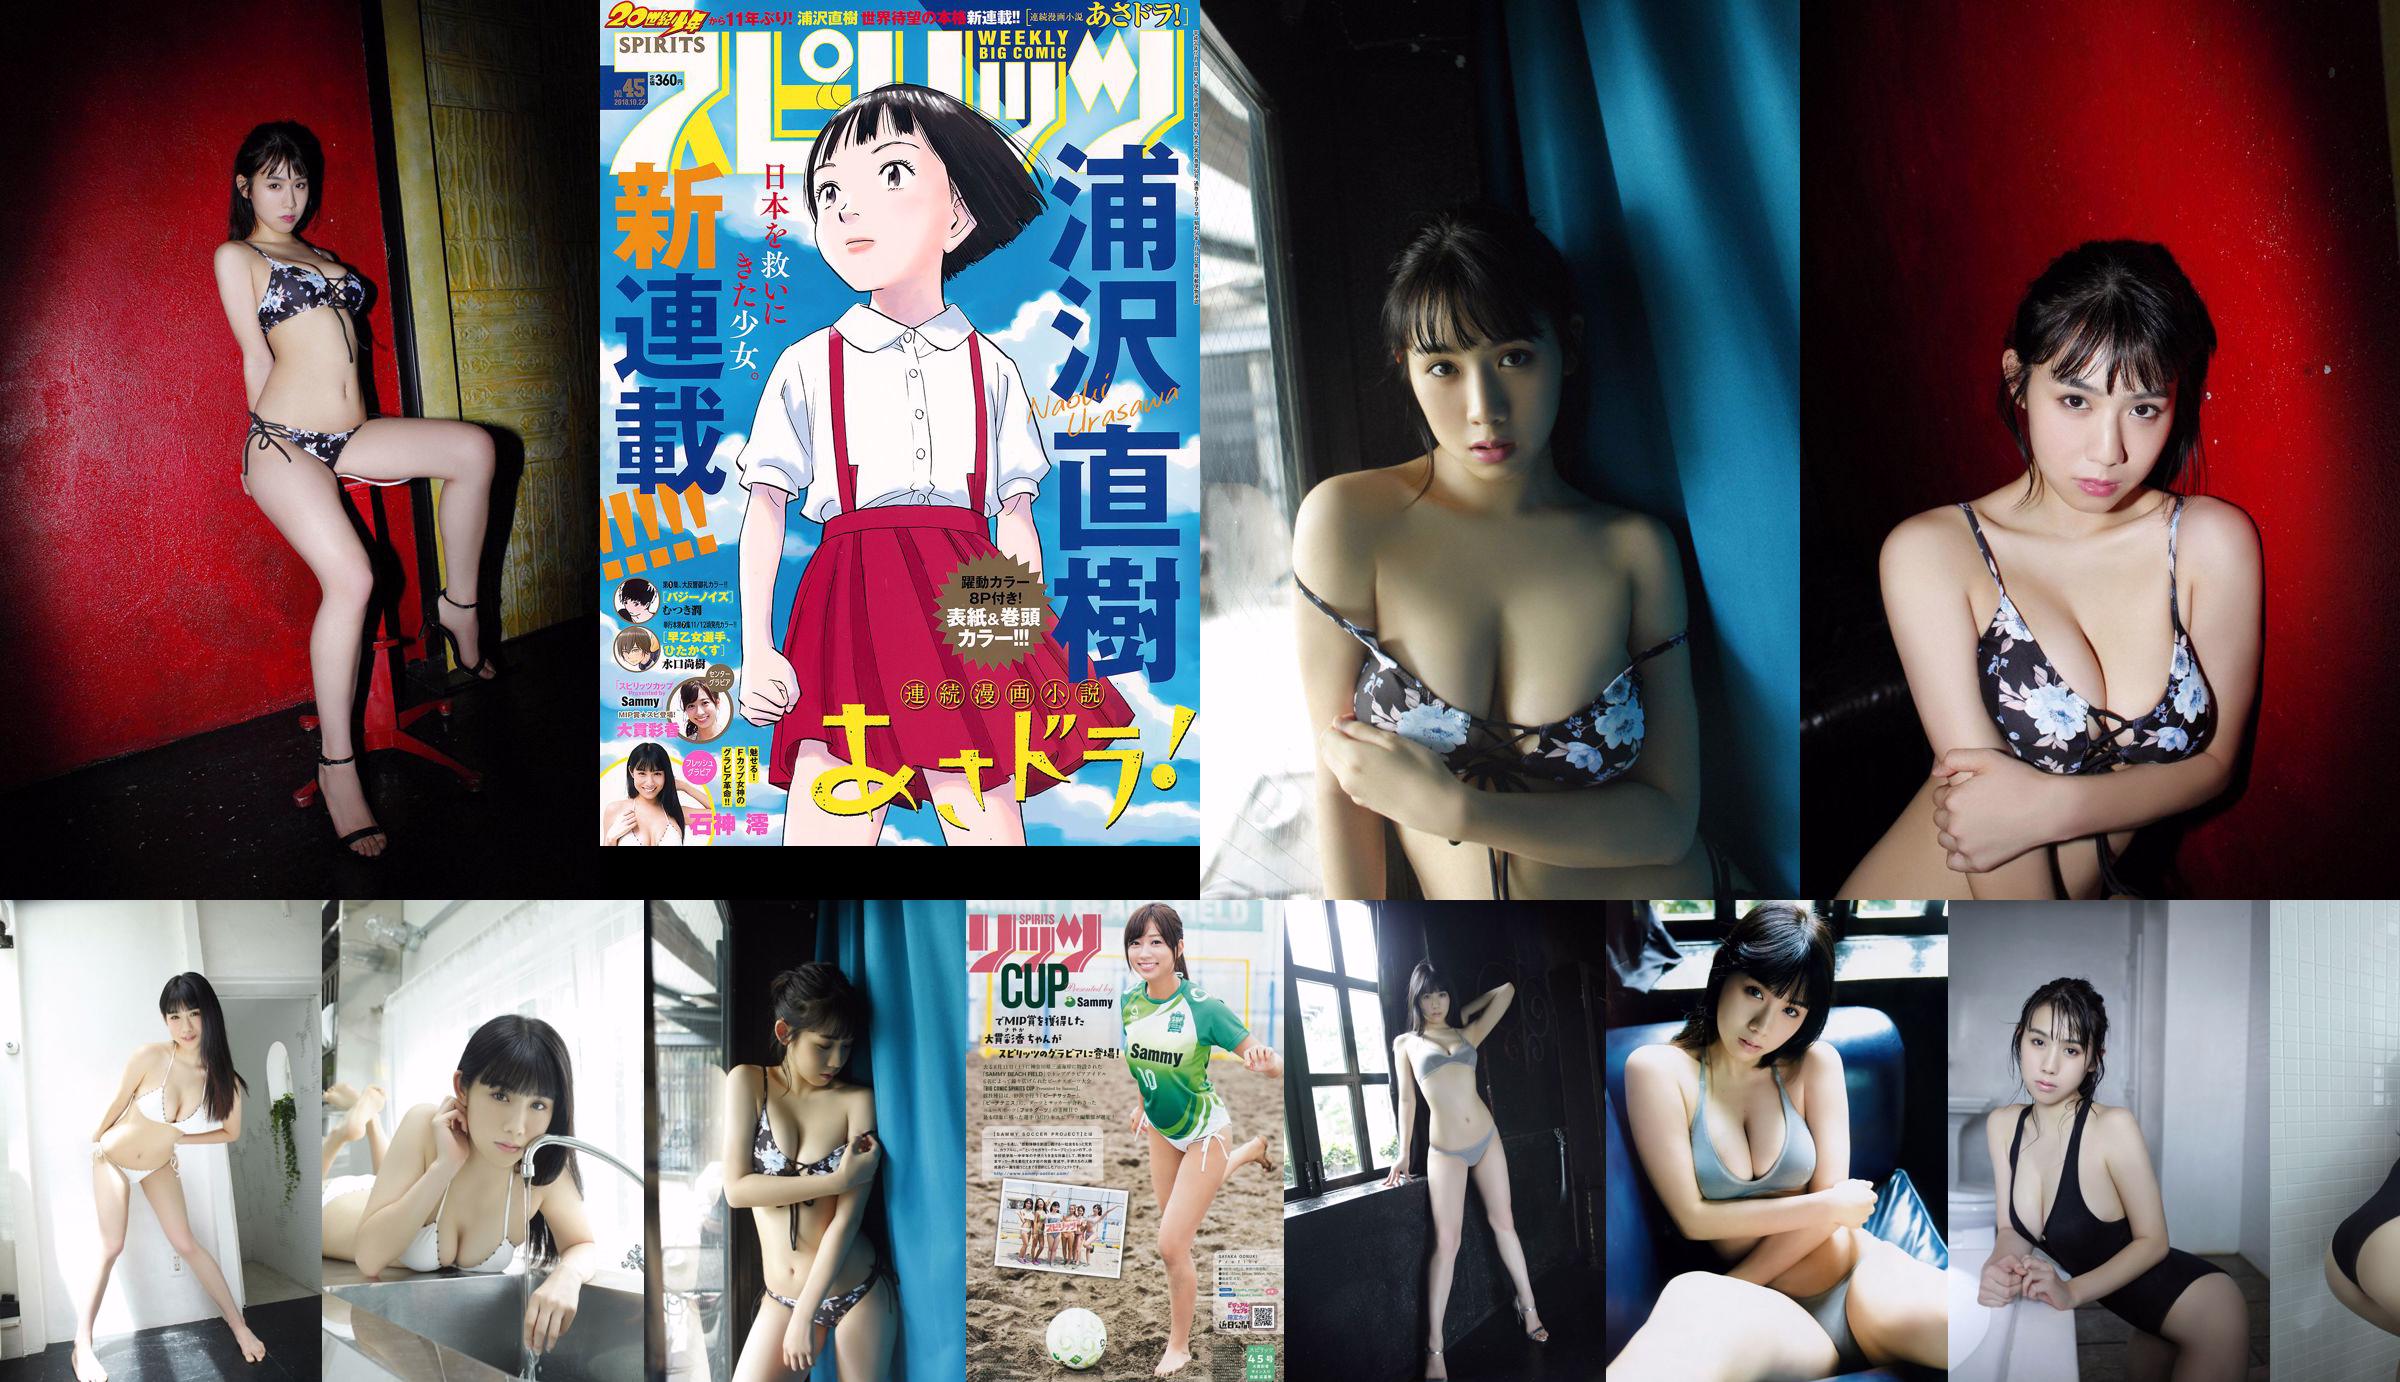 [Wöchentliche große Comic-Geister] Rei Ishigami Ishigami No.45 Photo Magazine im Jahr 2018 No.8d334b Seite 1